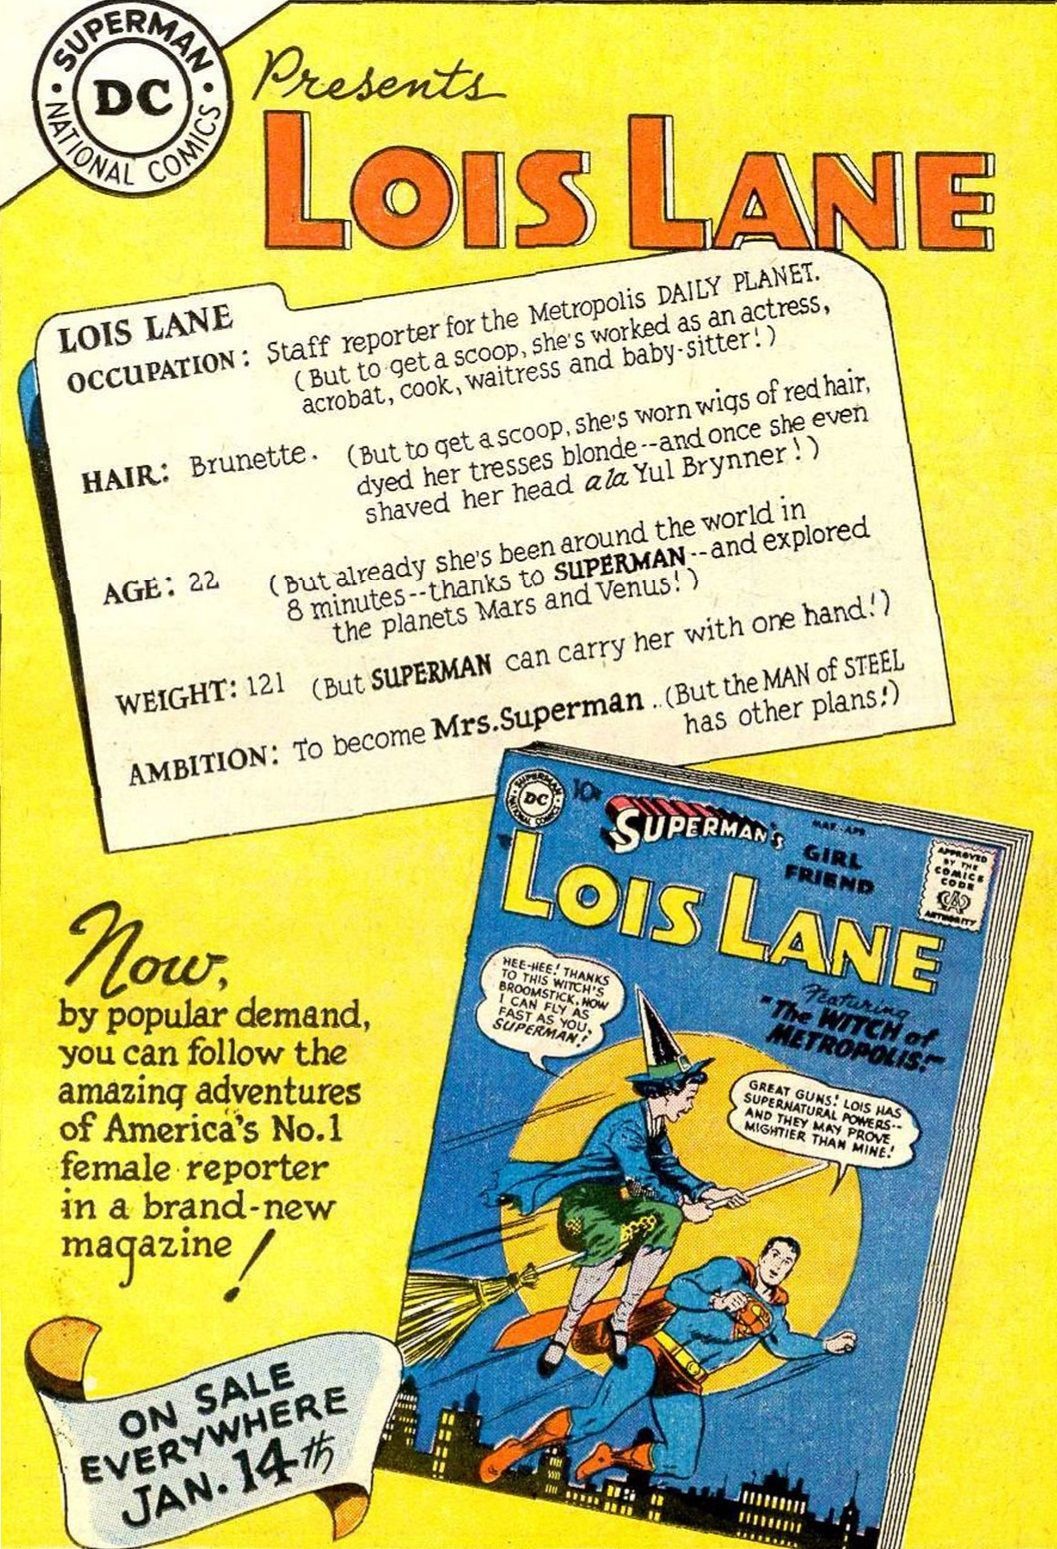 Cine este mai în vârstă, Superman sau Lois Lane? (Este complicat)